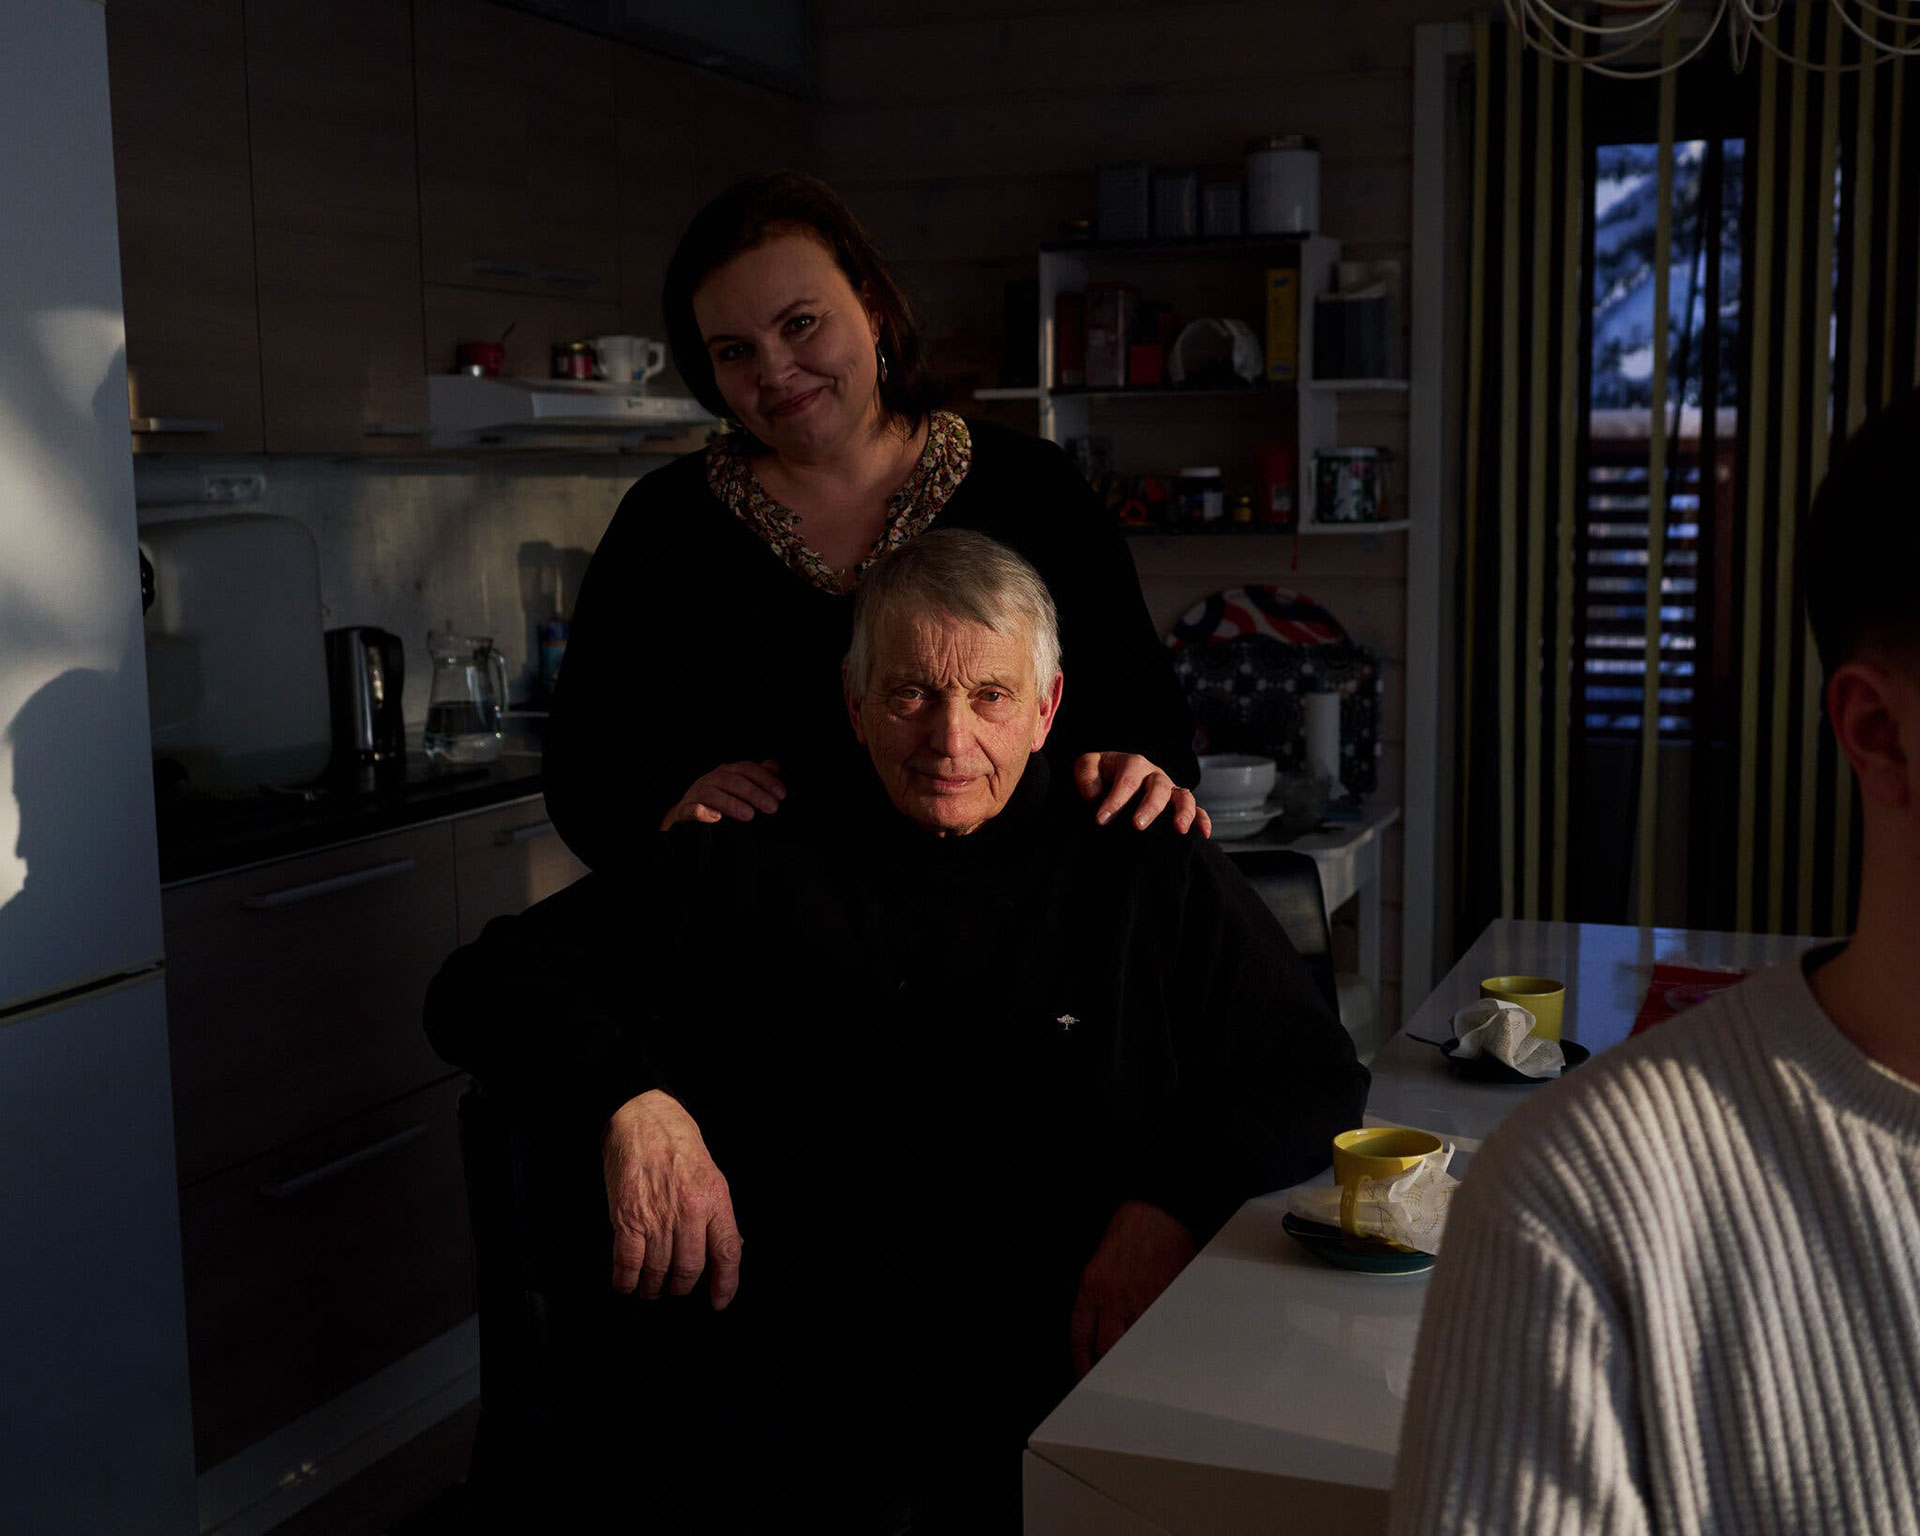 Tuomo Puutio, agricultor jubilado de 74 años, y su hija Marjukka, directora de orquesta de 47 años. En Finlandia, "tienes la oportunidad de tocar el violonchelo, aunque seas la hija de un granjero", dice Puutio